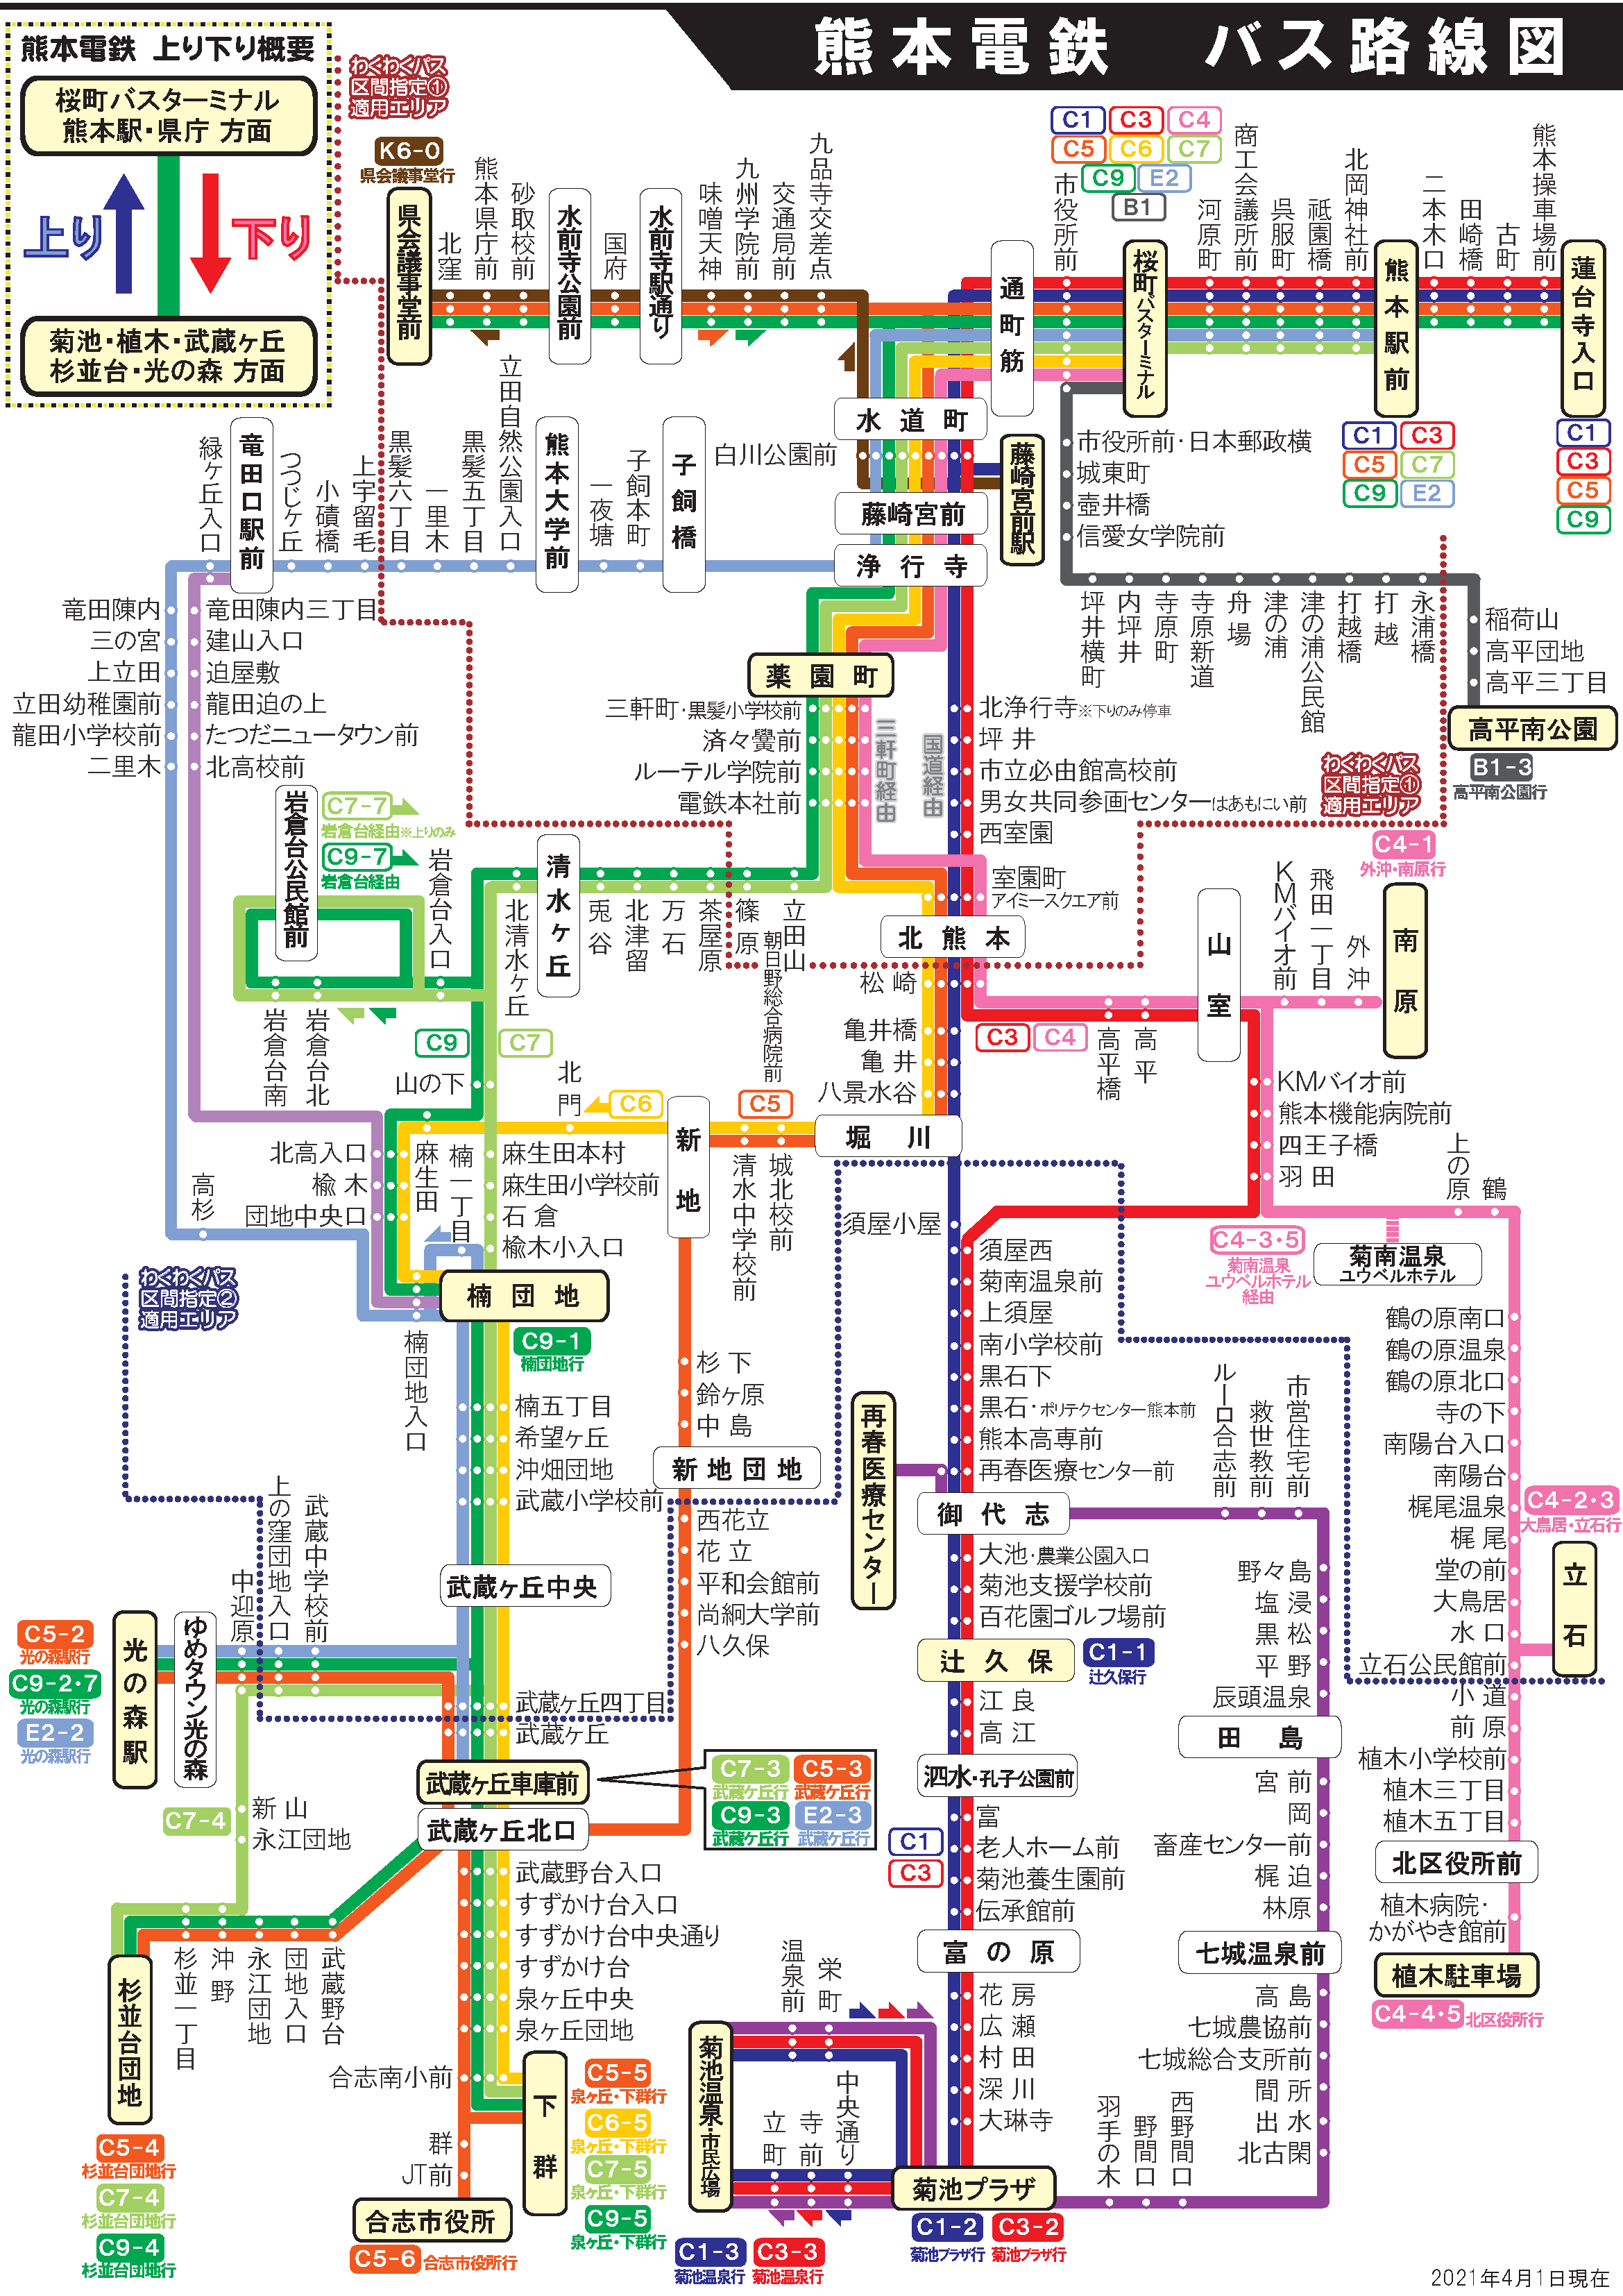 路線図 案内番号一覧 路線バス 熊本電気鉄道株式会社